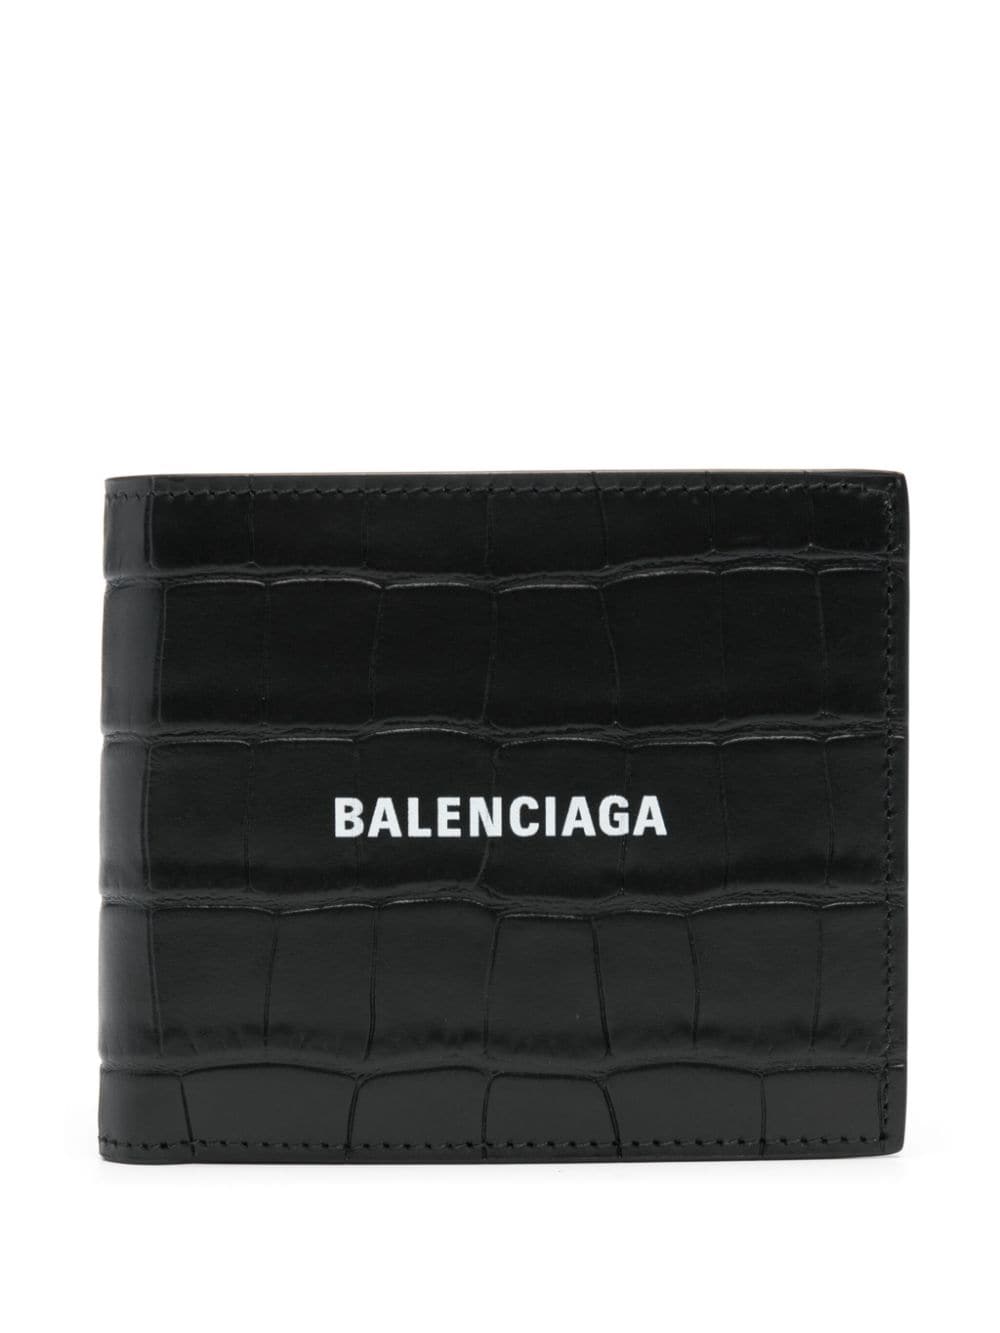 Balenciaga folded logo wallet - Black von Balenciaga